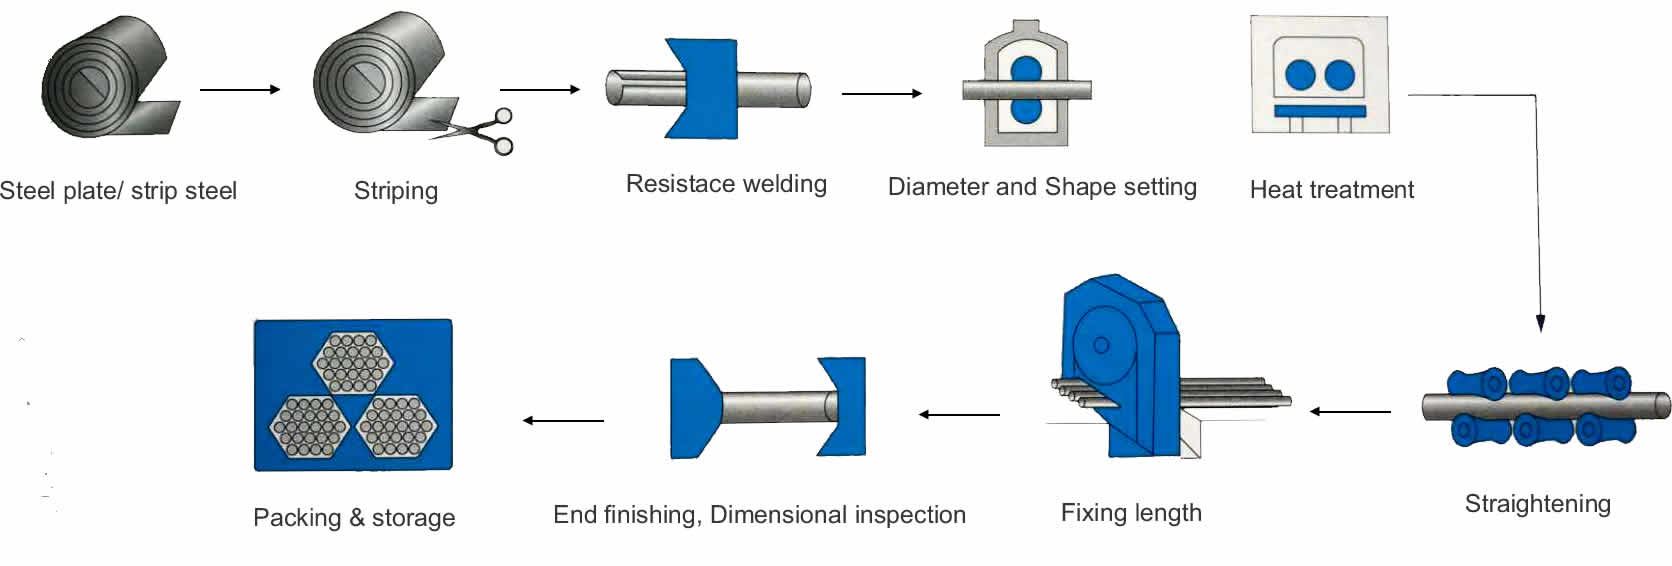 特殊精密焊接工艺流程